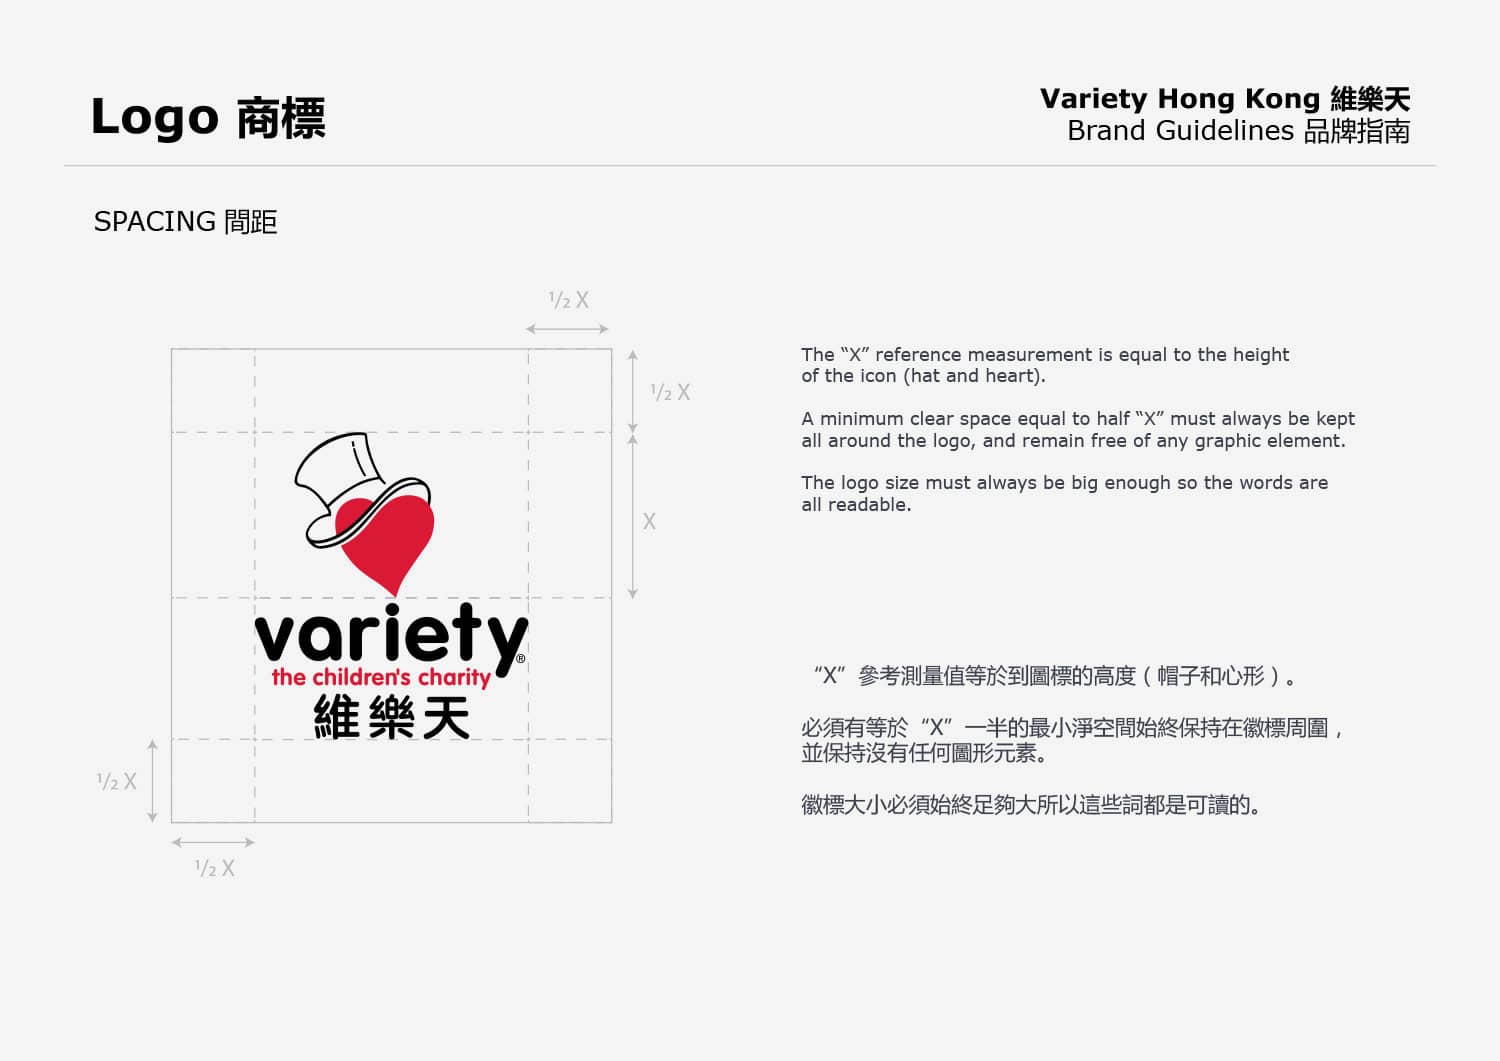 Variety-HK-guidelines-2021-14